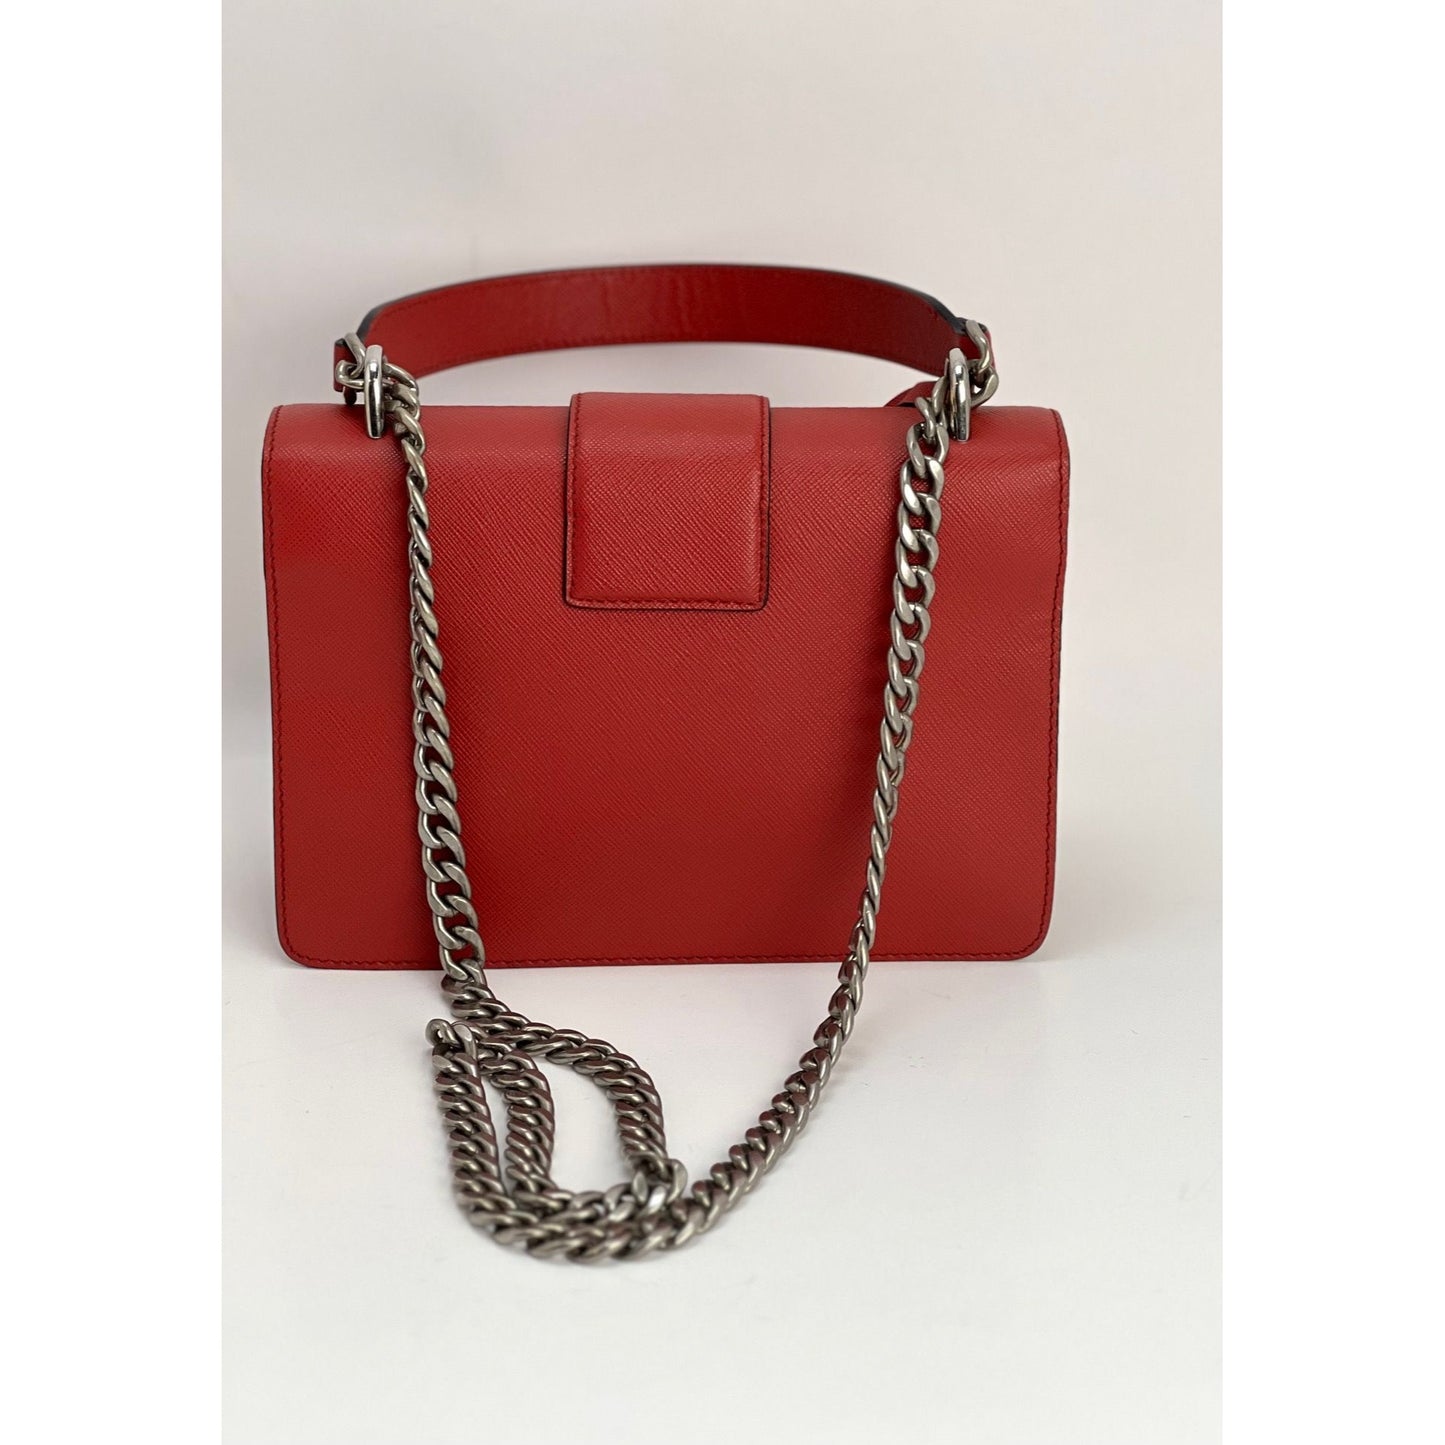 Prada Belle leather chain shoulder bag